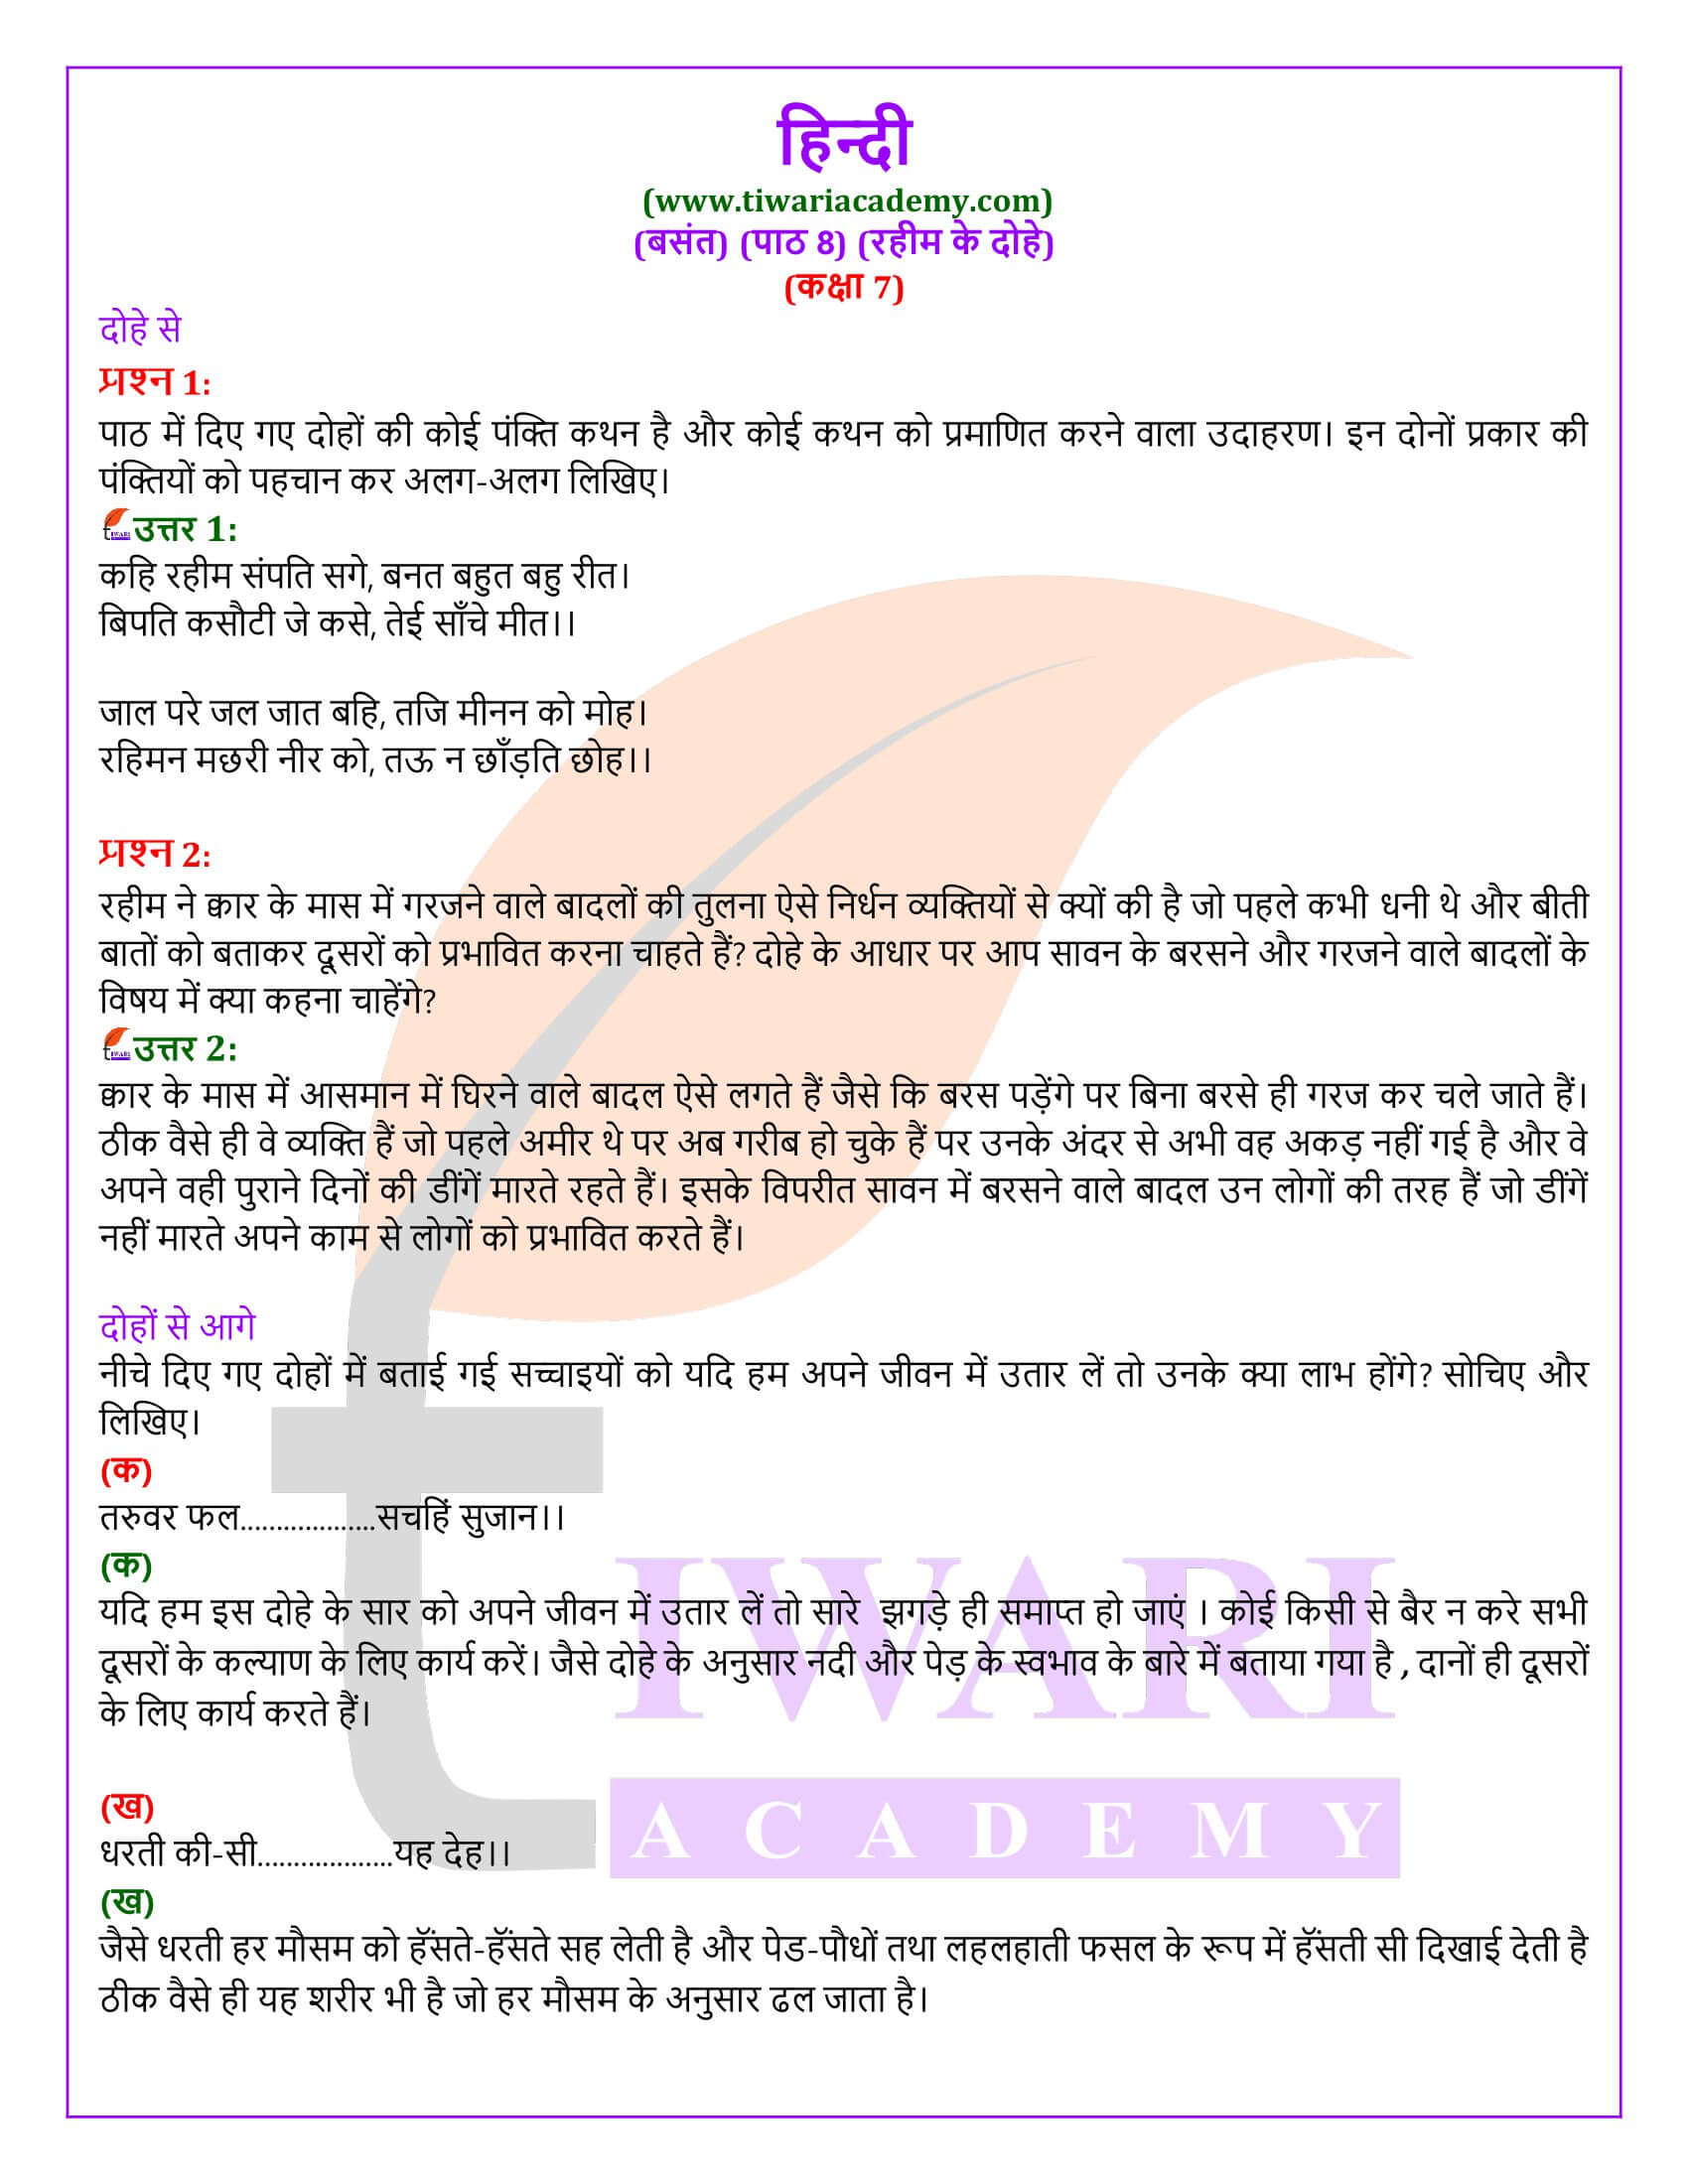 कक्षा 7 हिंदी वसंत अध्याय 8 रहीम के दोहे के प्रश्न उत्तर